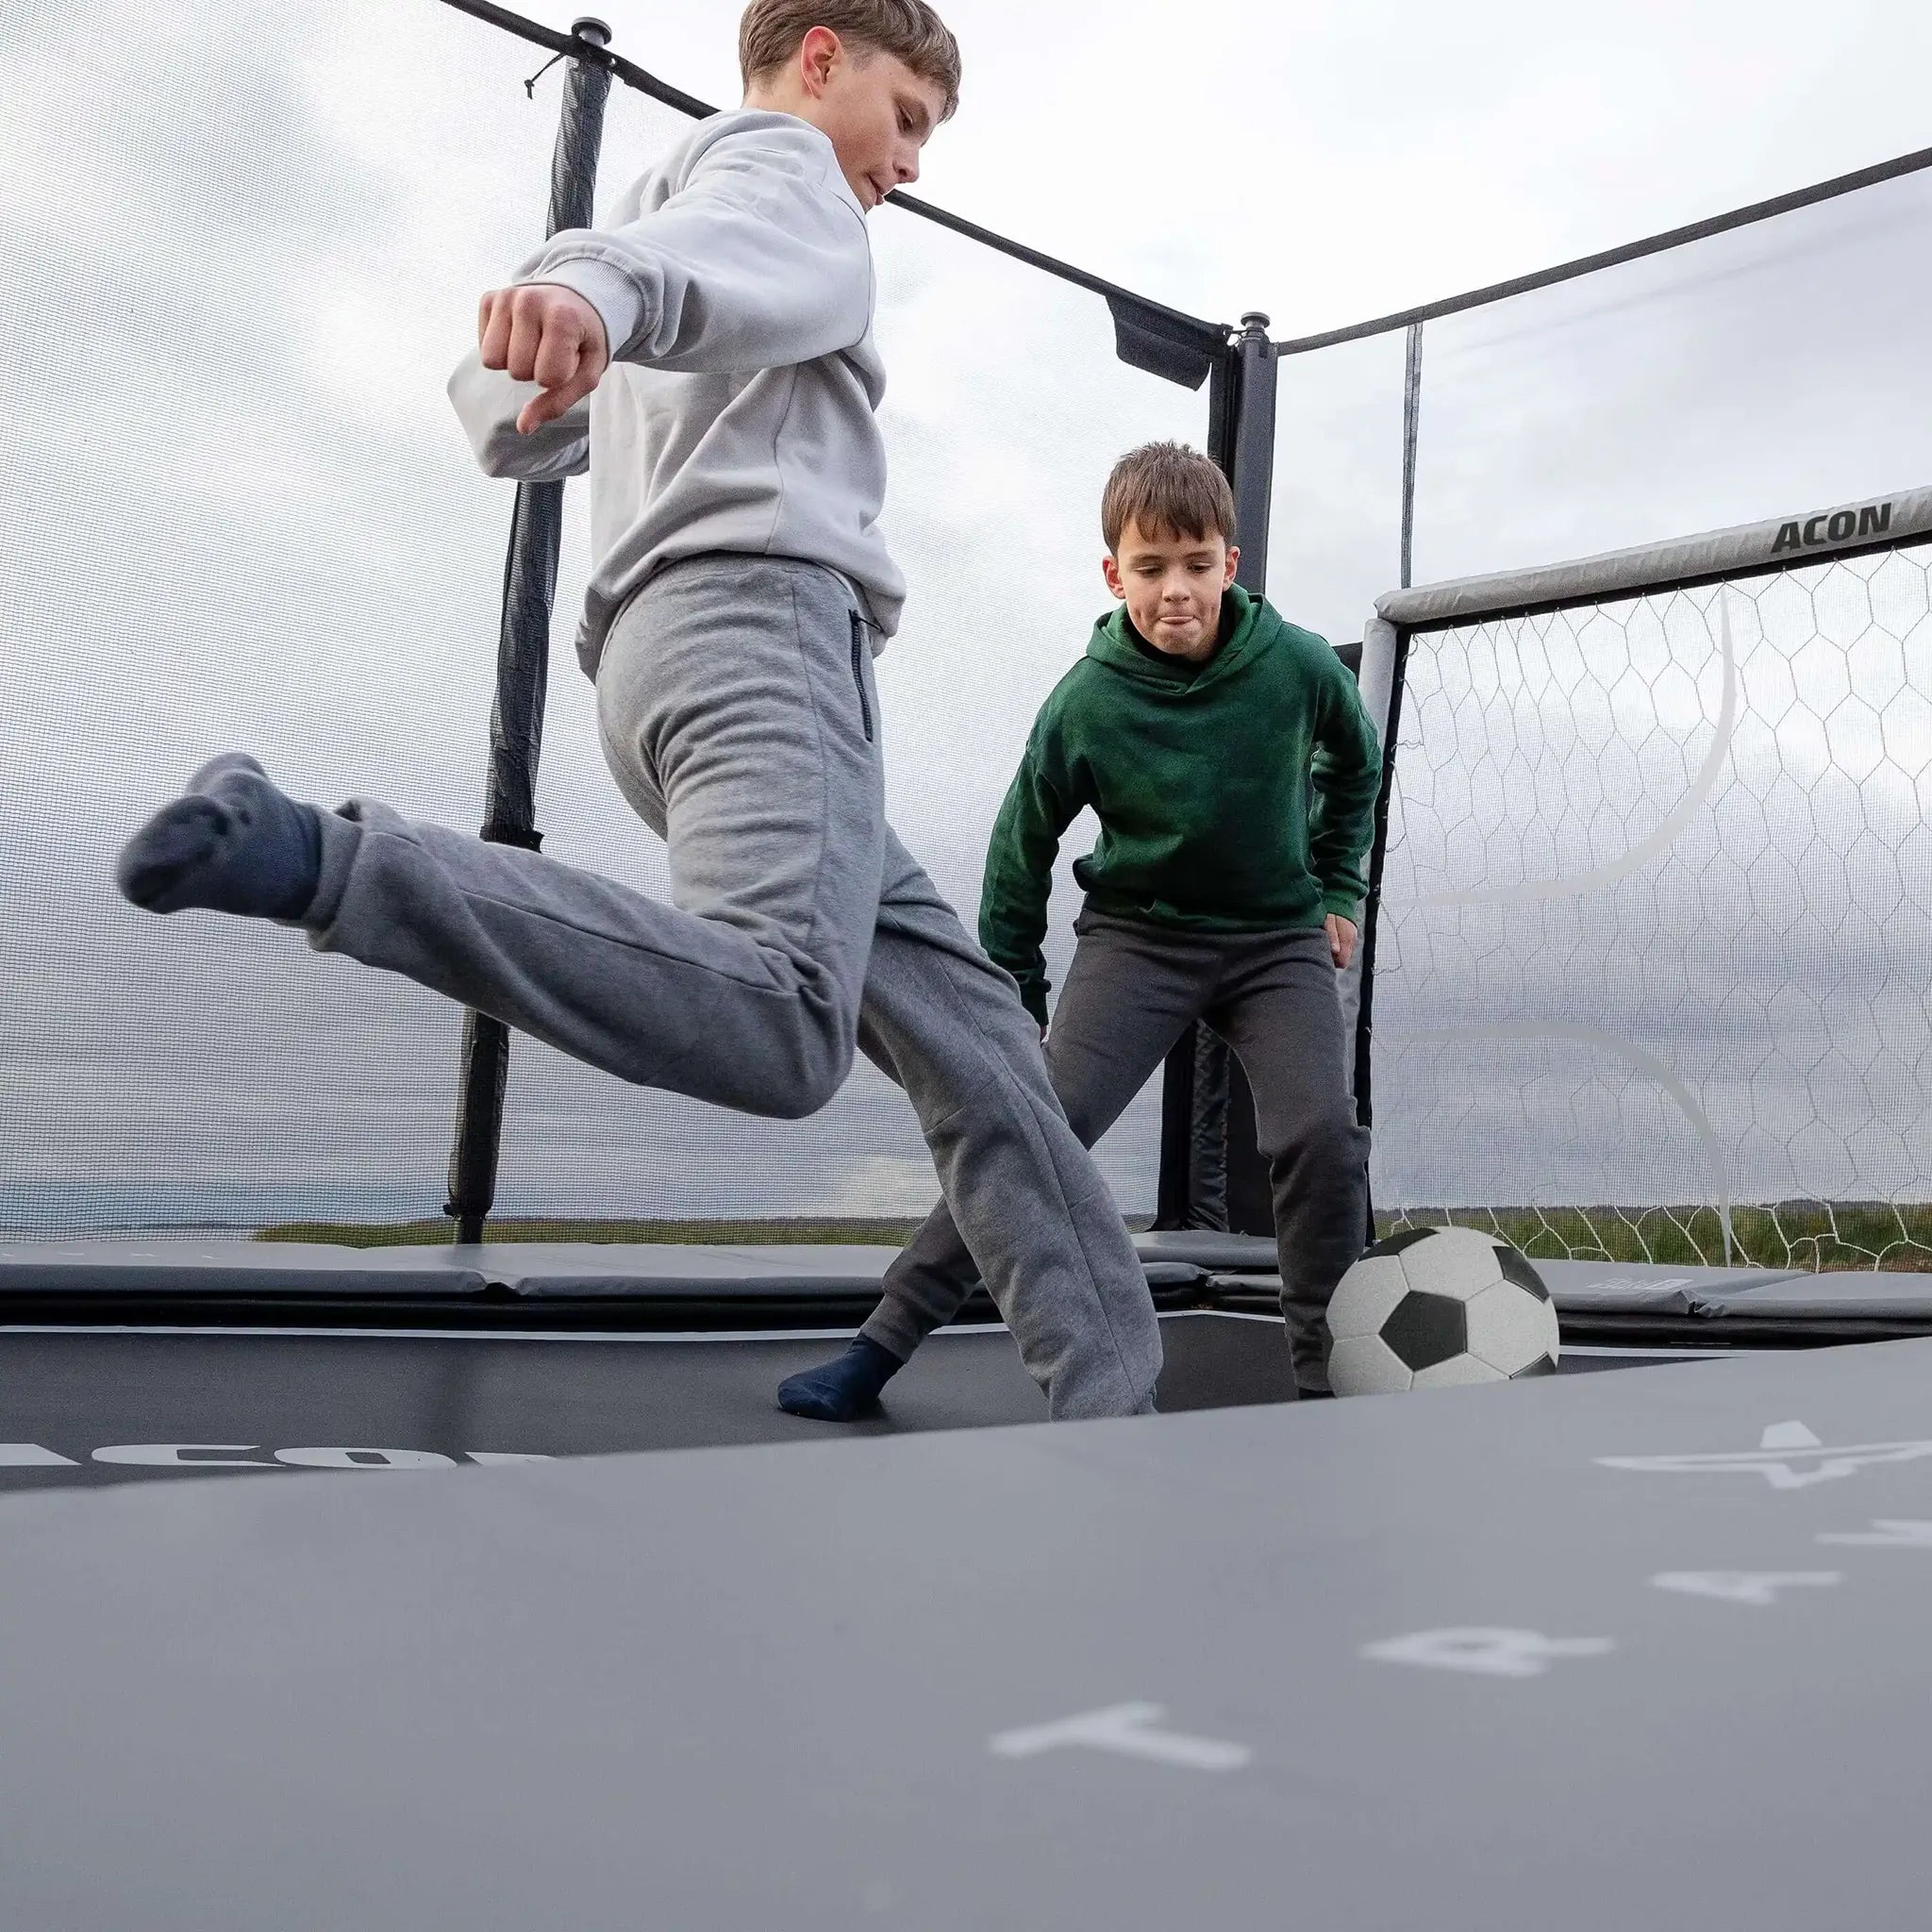 Kaksi poikaa pelaa jalkapalloa Acon X trampoliinilla.